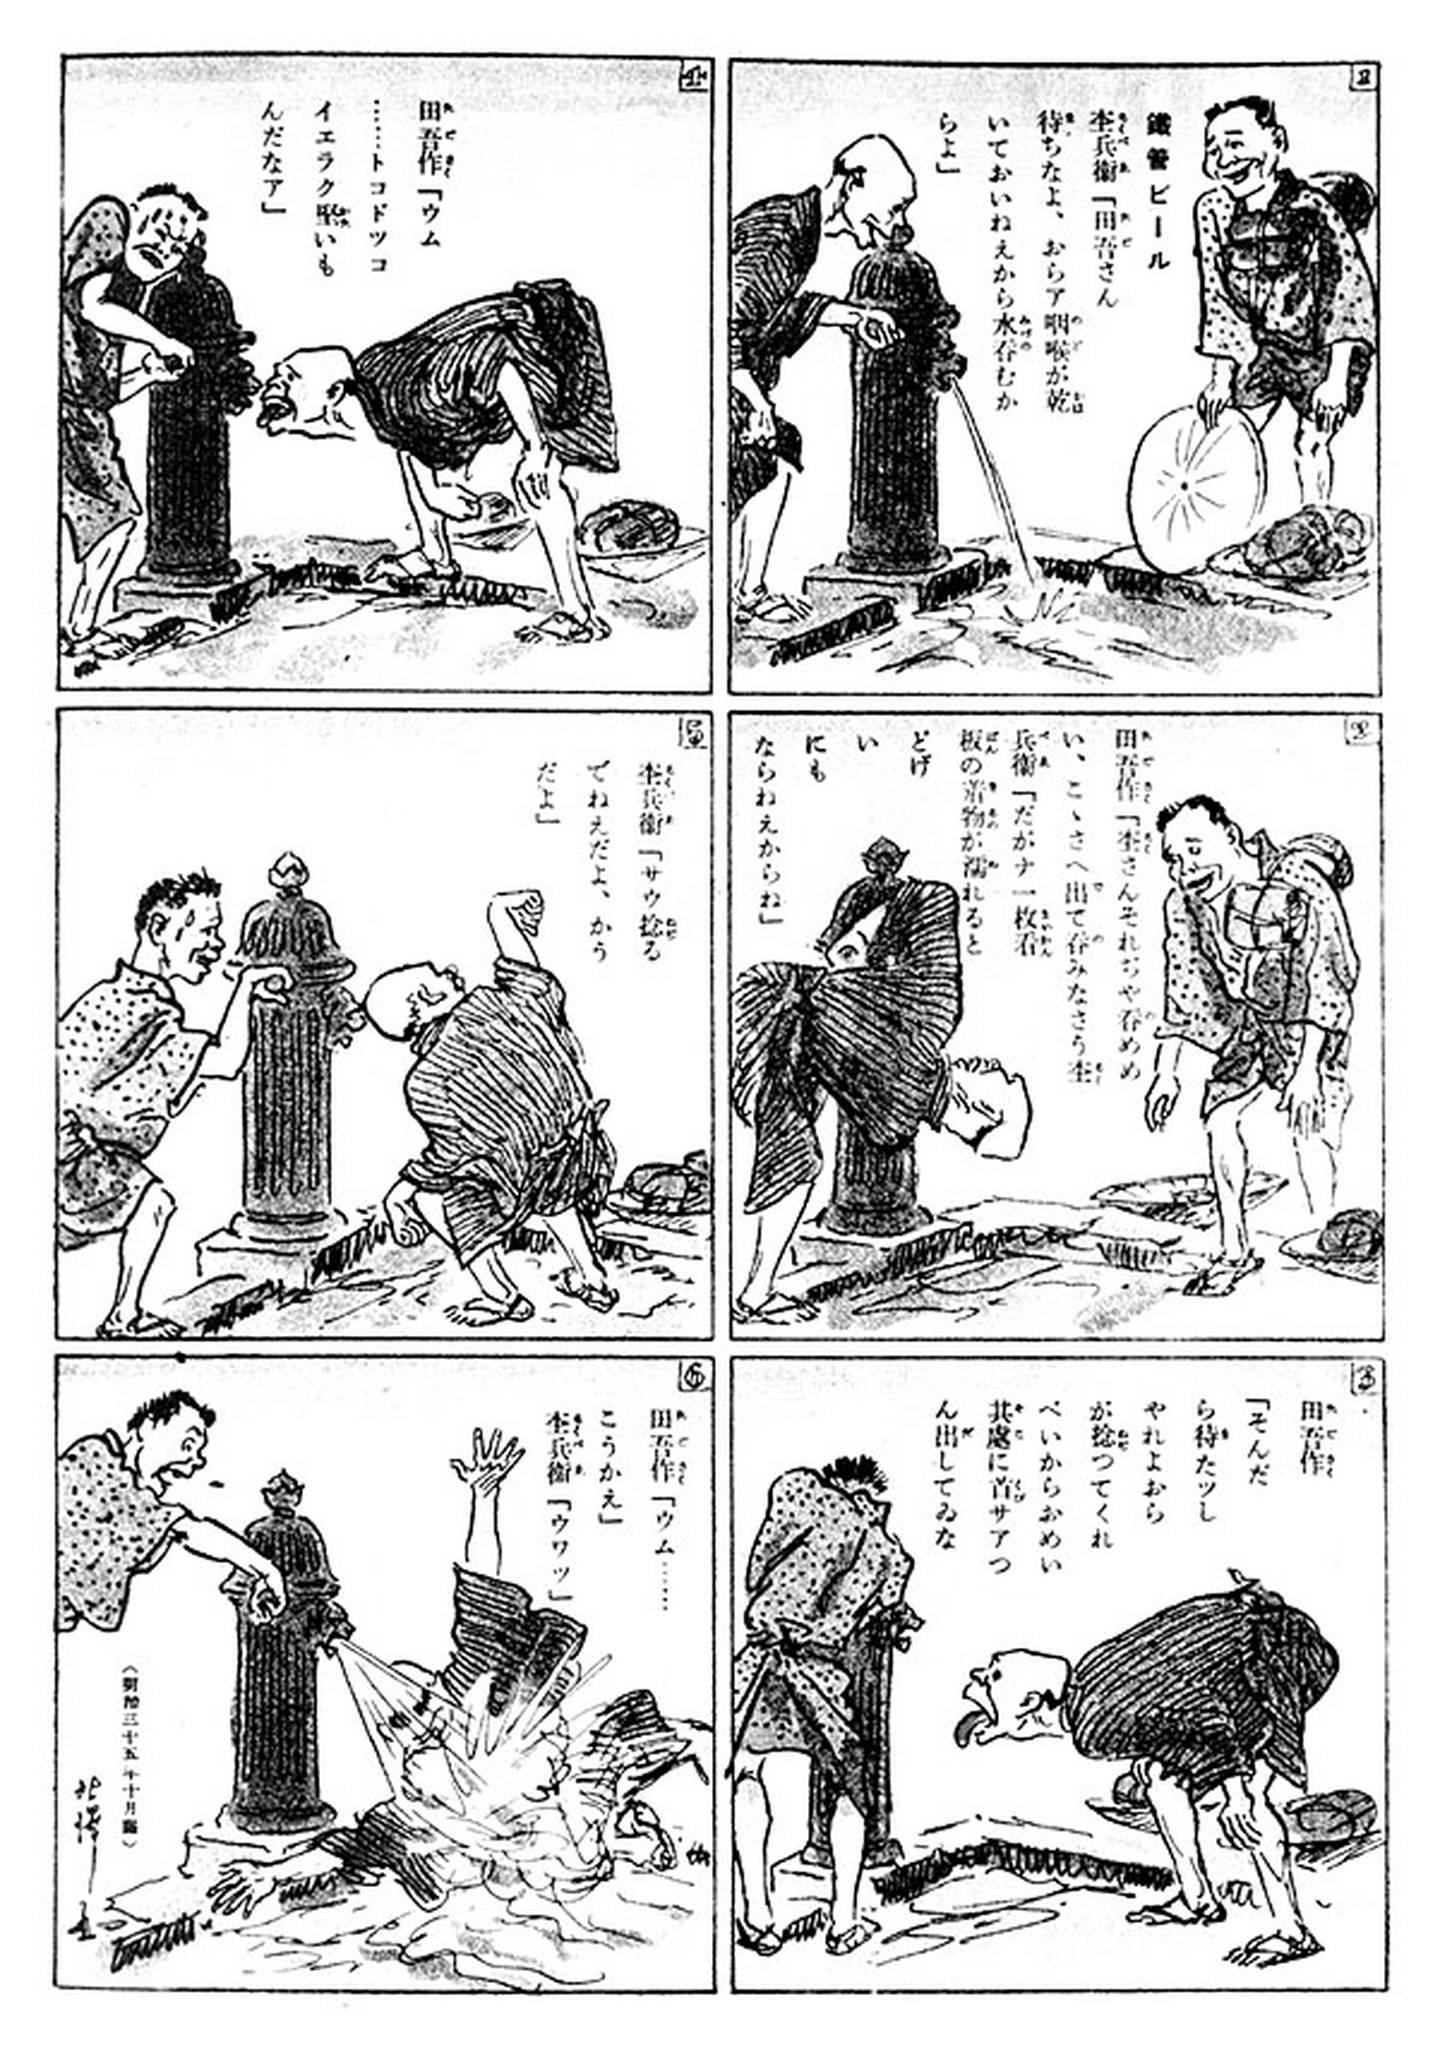 Tagosaku to Mokube no Tokyo Kenbutsu, considerado el primer manga de la historia. Obra del artista Rakuten Kitazawa, del año 1902.